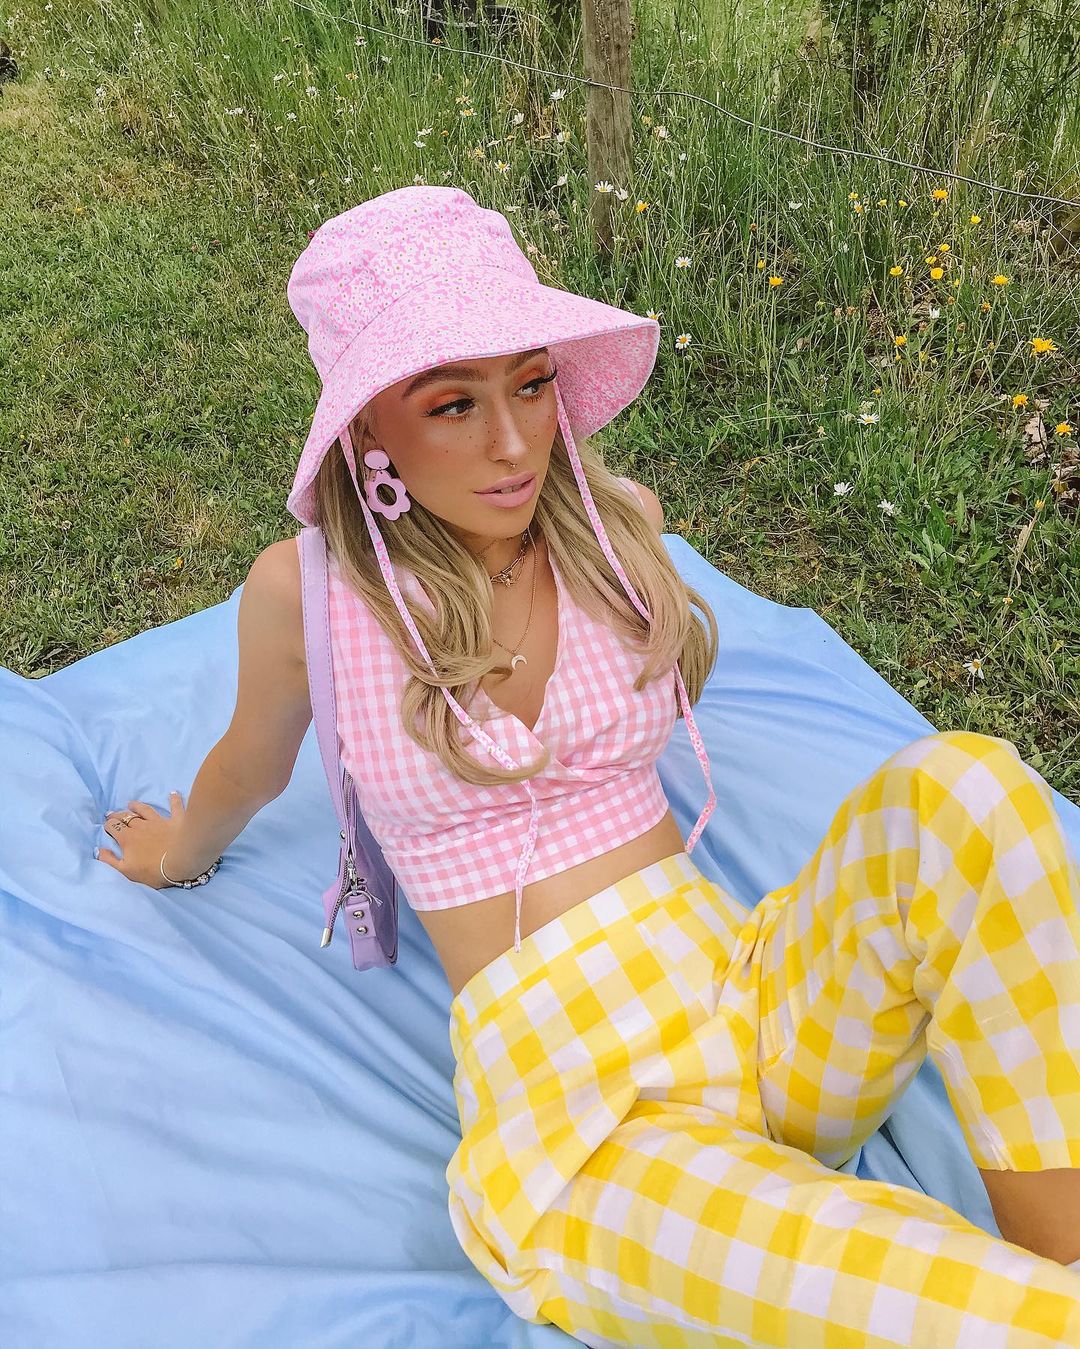 Garota usando look com top cropped xadrez vichy rosa e calça amarela na mesma estampa. Ela está sentada, com os dois braços para trás, uma bolsa lilás pendurada em um dos ombros, além de um chapéu rosa floral e um brinco rosa.